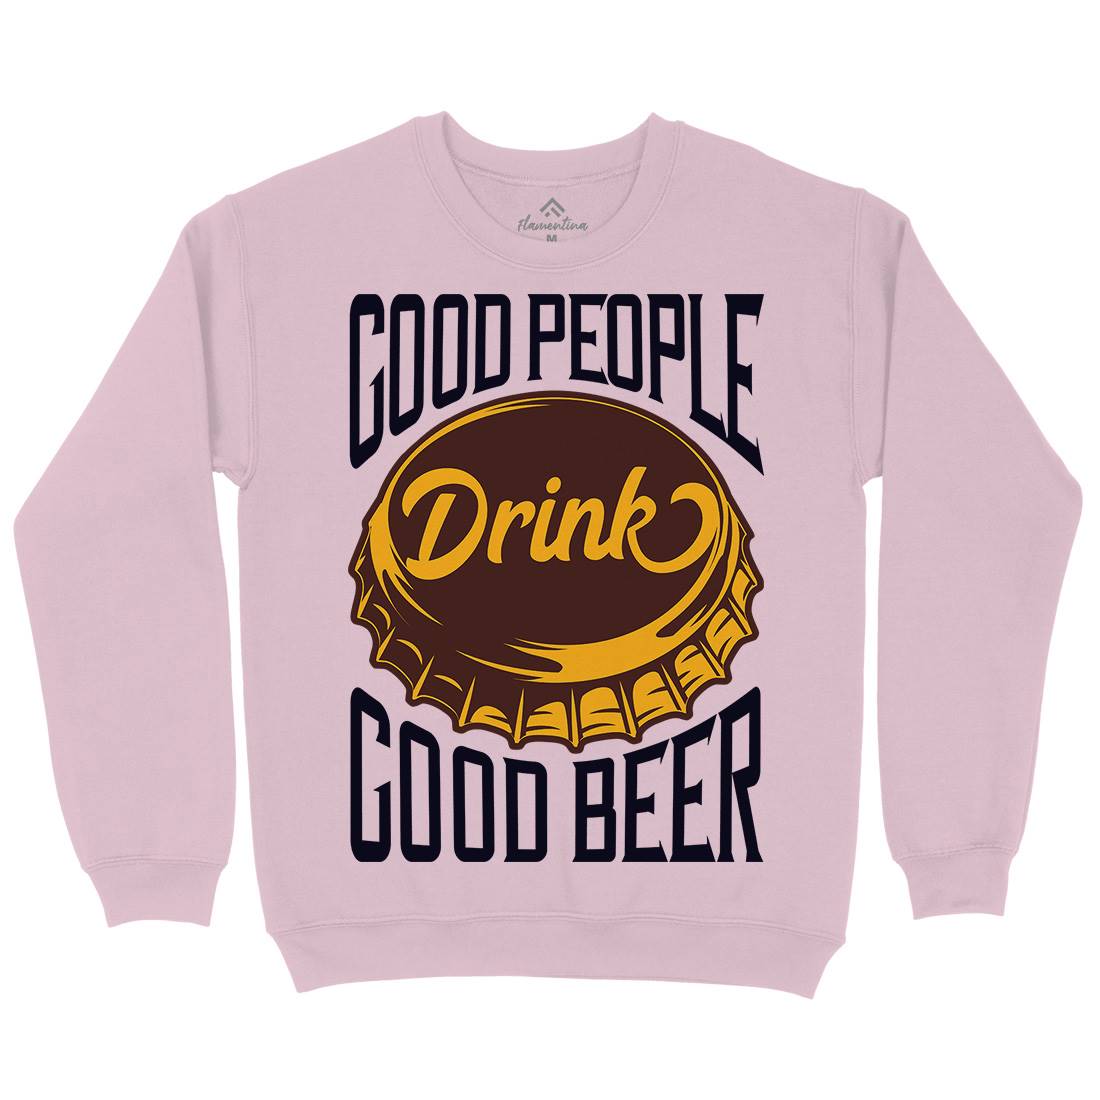 Good People Drink Beer Kids Crew Neck Sweatshirt Drinks B287